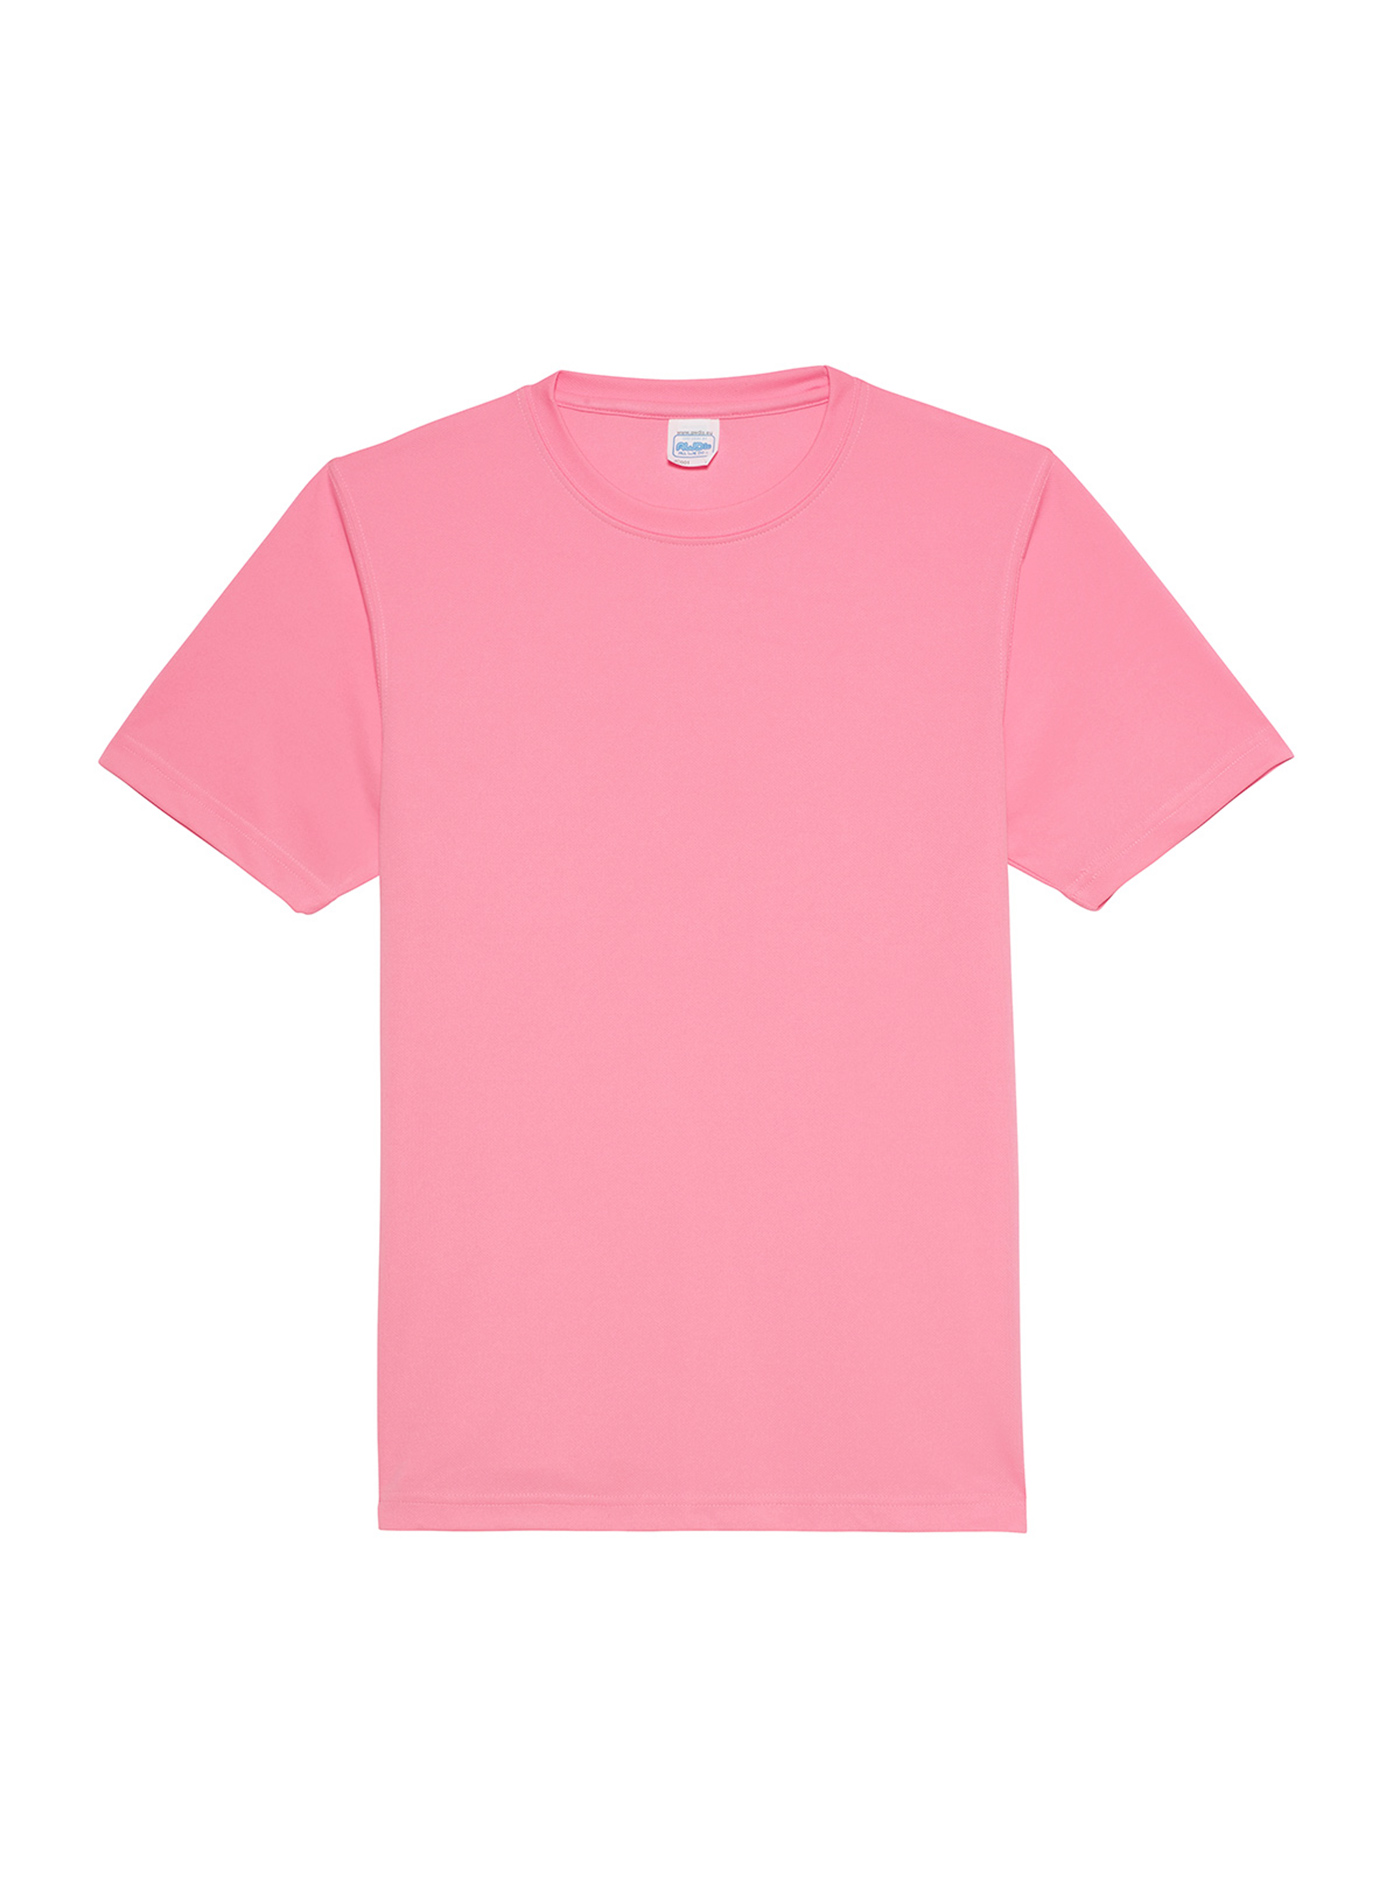 Unisex tričko Just Ts Neonlight - Neonově růžová XXL